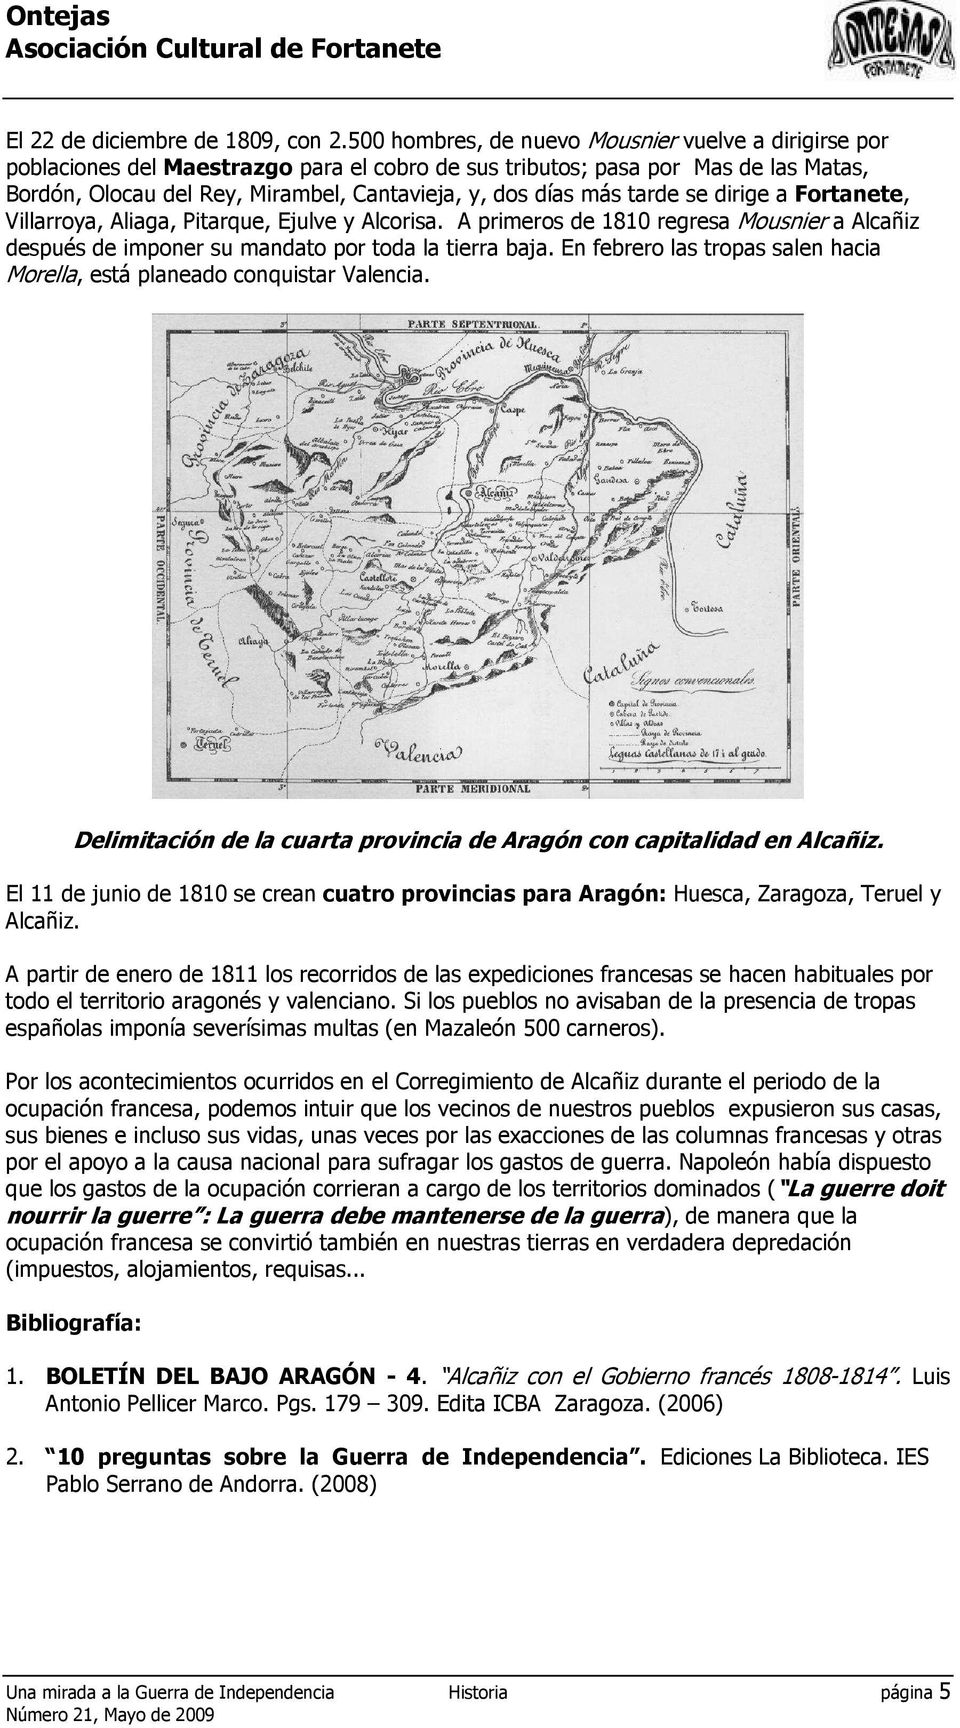 más tarde se dirige a Fortanete, Villarroya, Aliaga, Pitarque, Ejulve y Alcorisa. A primeros de 1810 regresa Mousnier a Alcañiz después de imponer su mandato por toda la tierra baja.